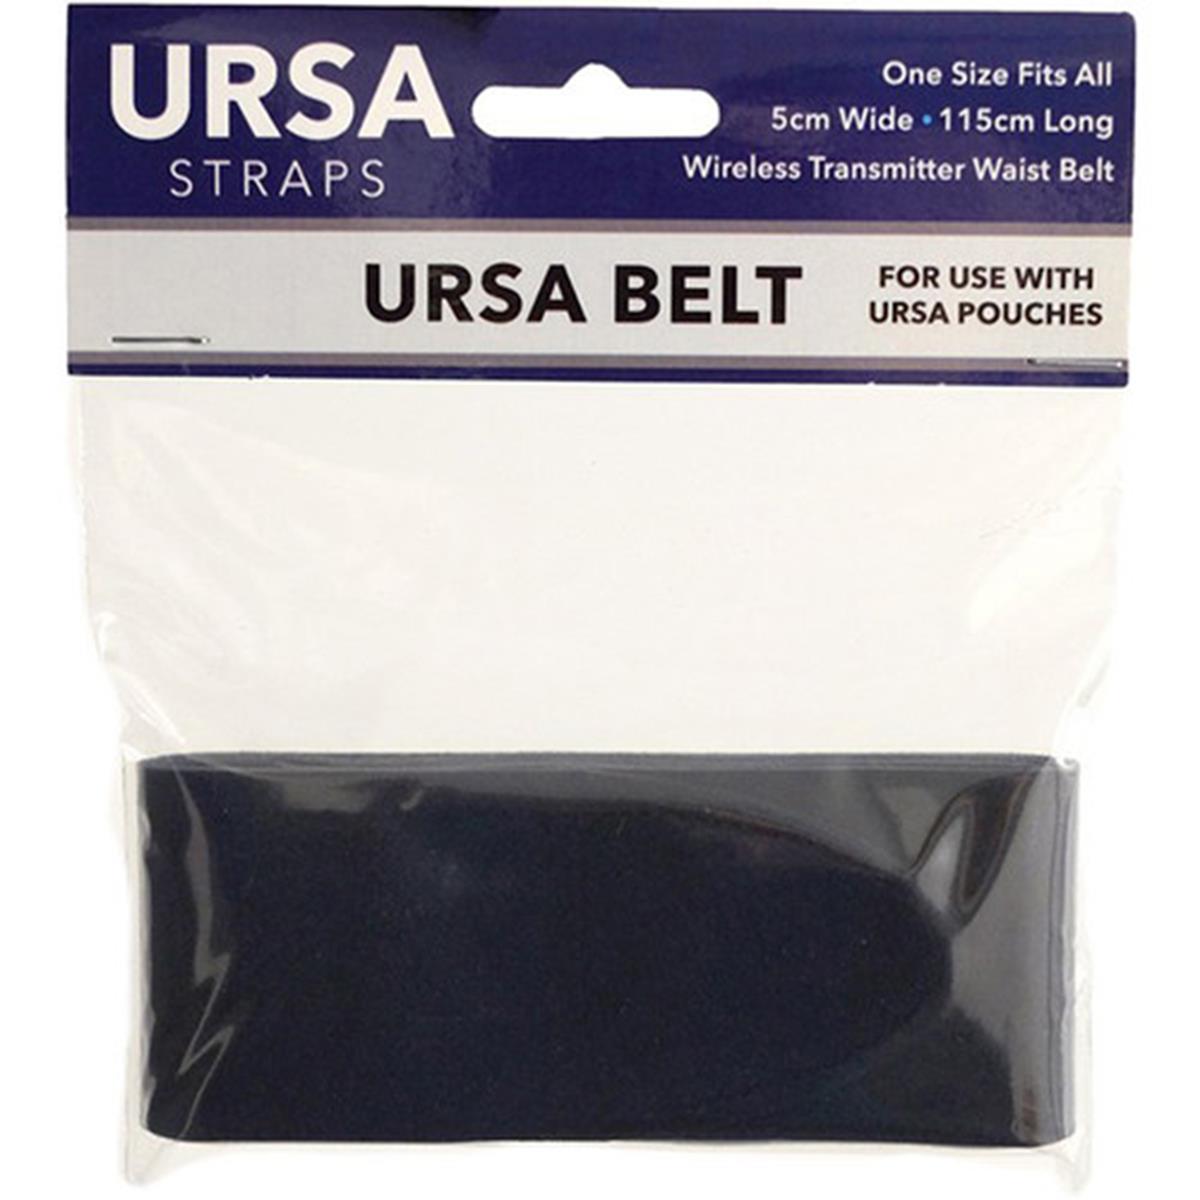 Image of URSA Waist Belt for Transmitters Black